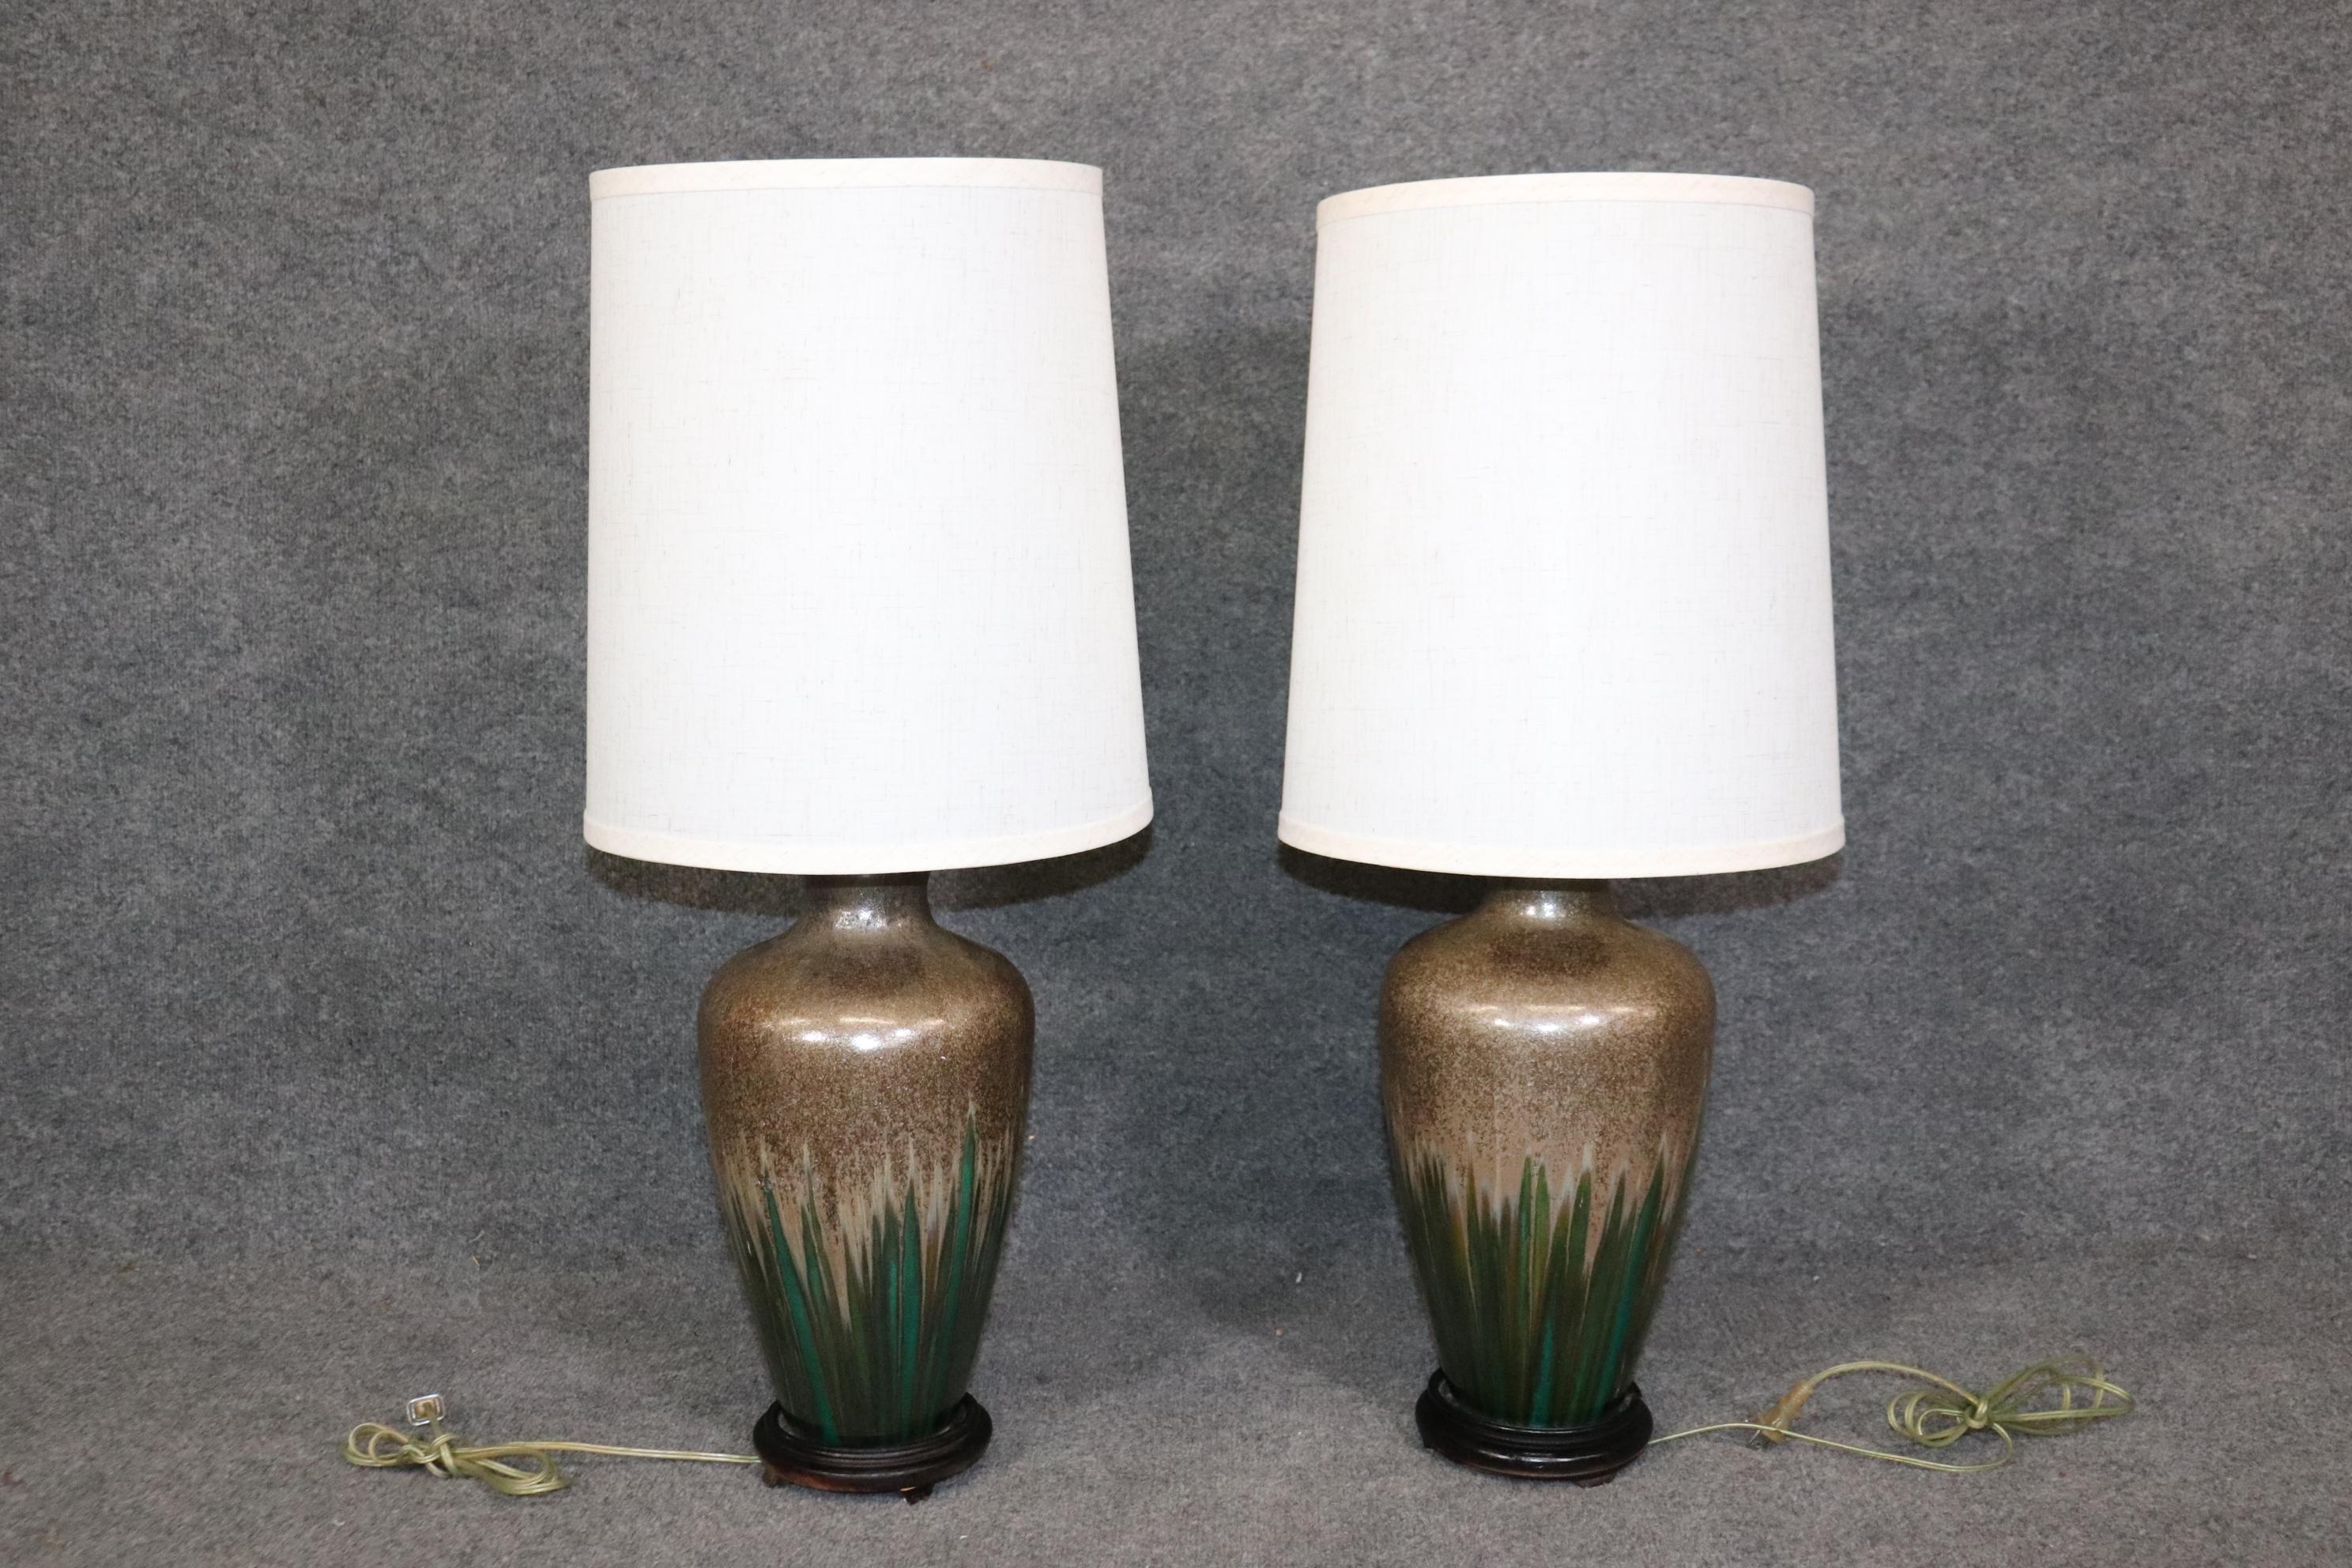 Dimensions - H : 33in W : 14in D : 14in (mesures avec les abat-jour) 
Cette paire de lampes de table en poterie émaillée verte de style moderne du milieu du siècle est un exemple intéressant de décoration minimaliste mais luxueuse. Cette paire de